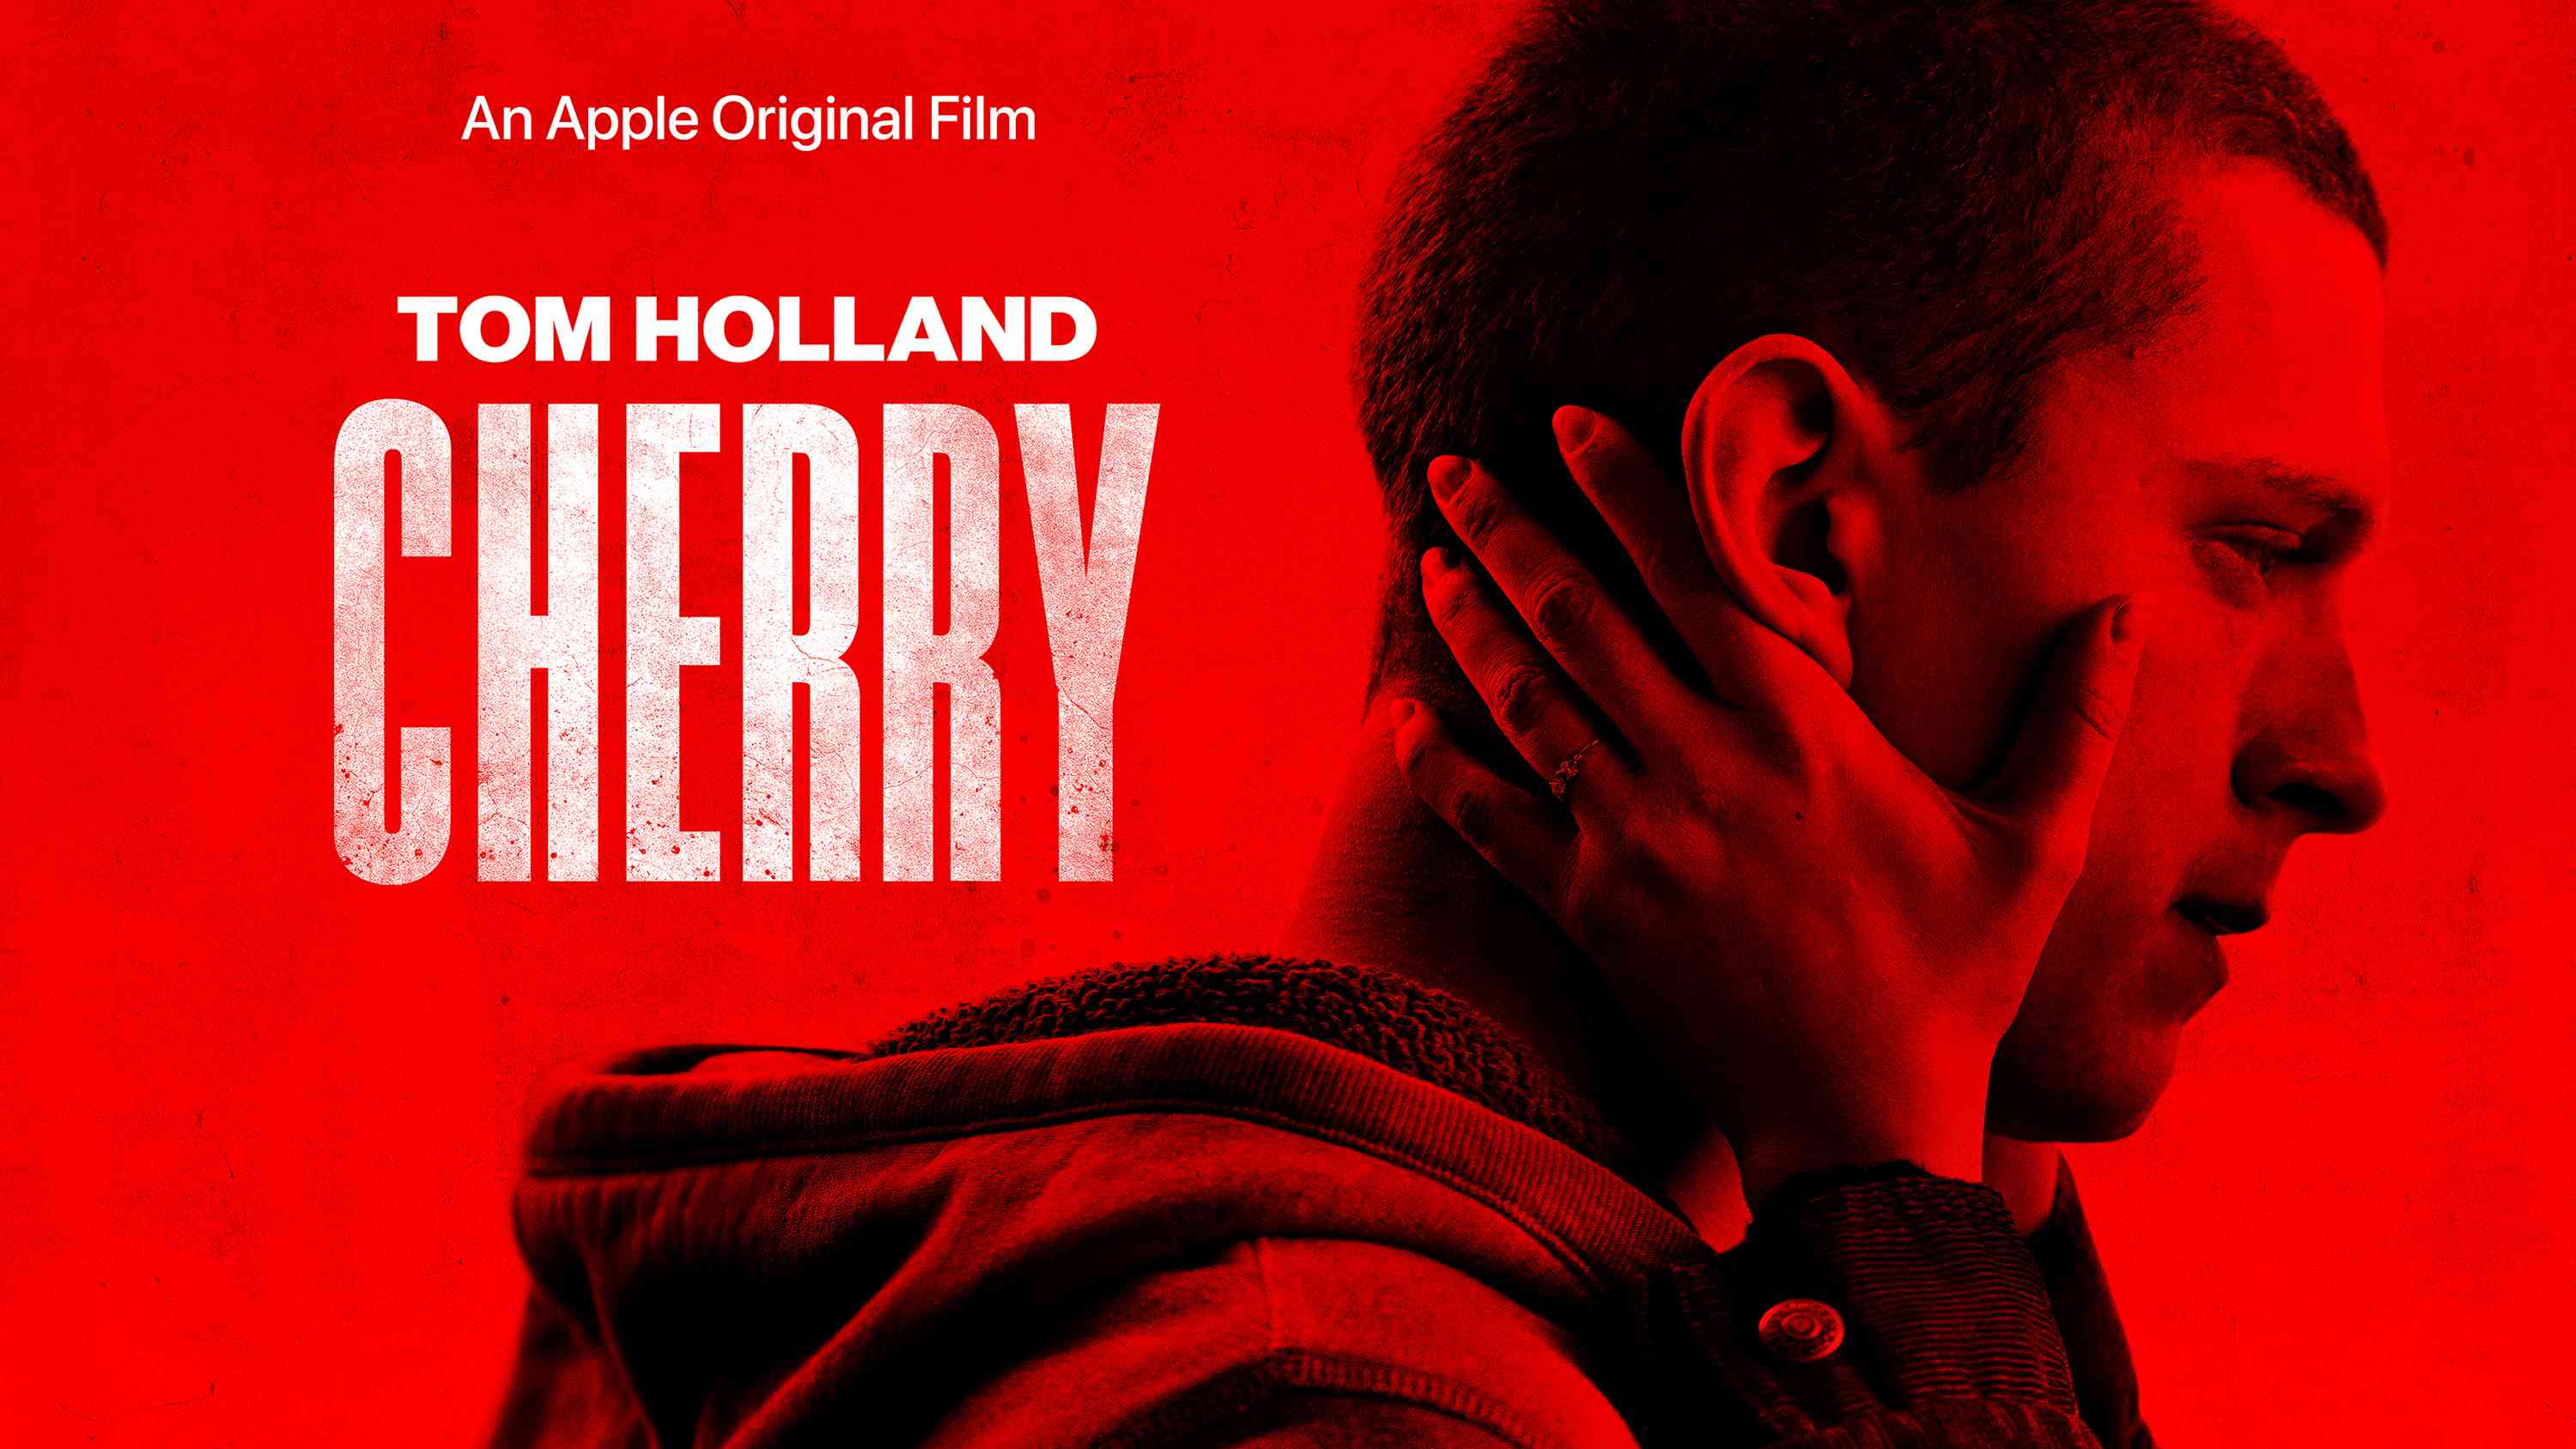 Arte-chave para o filme original da Apple 'Cherry'